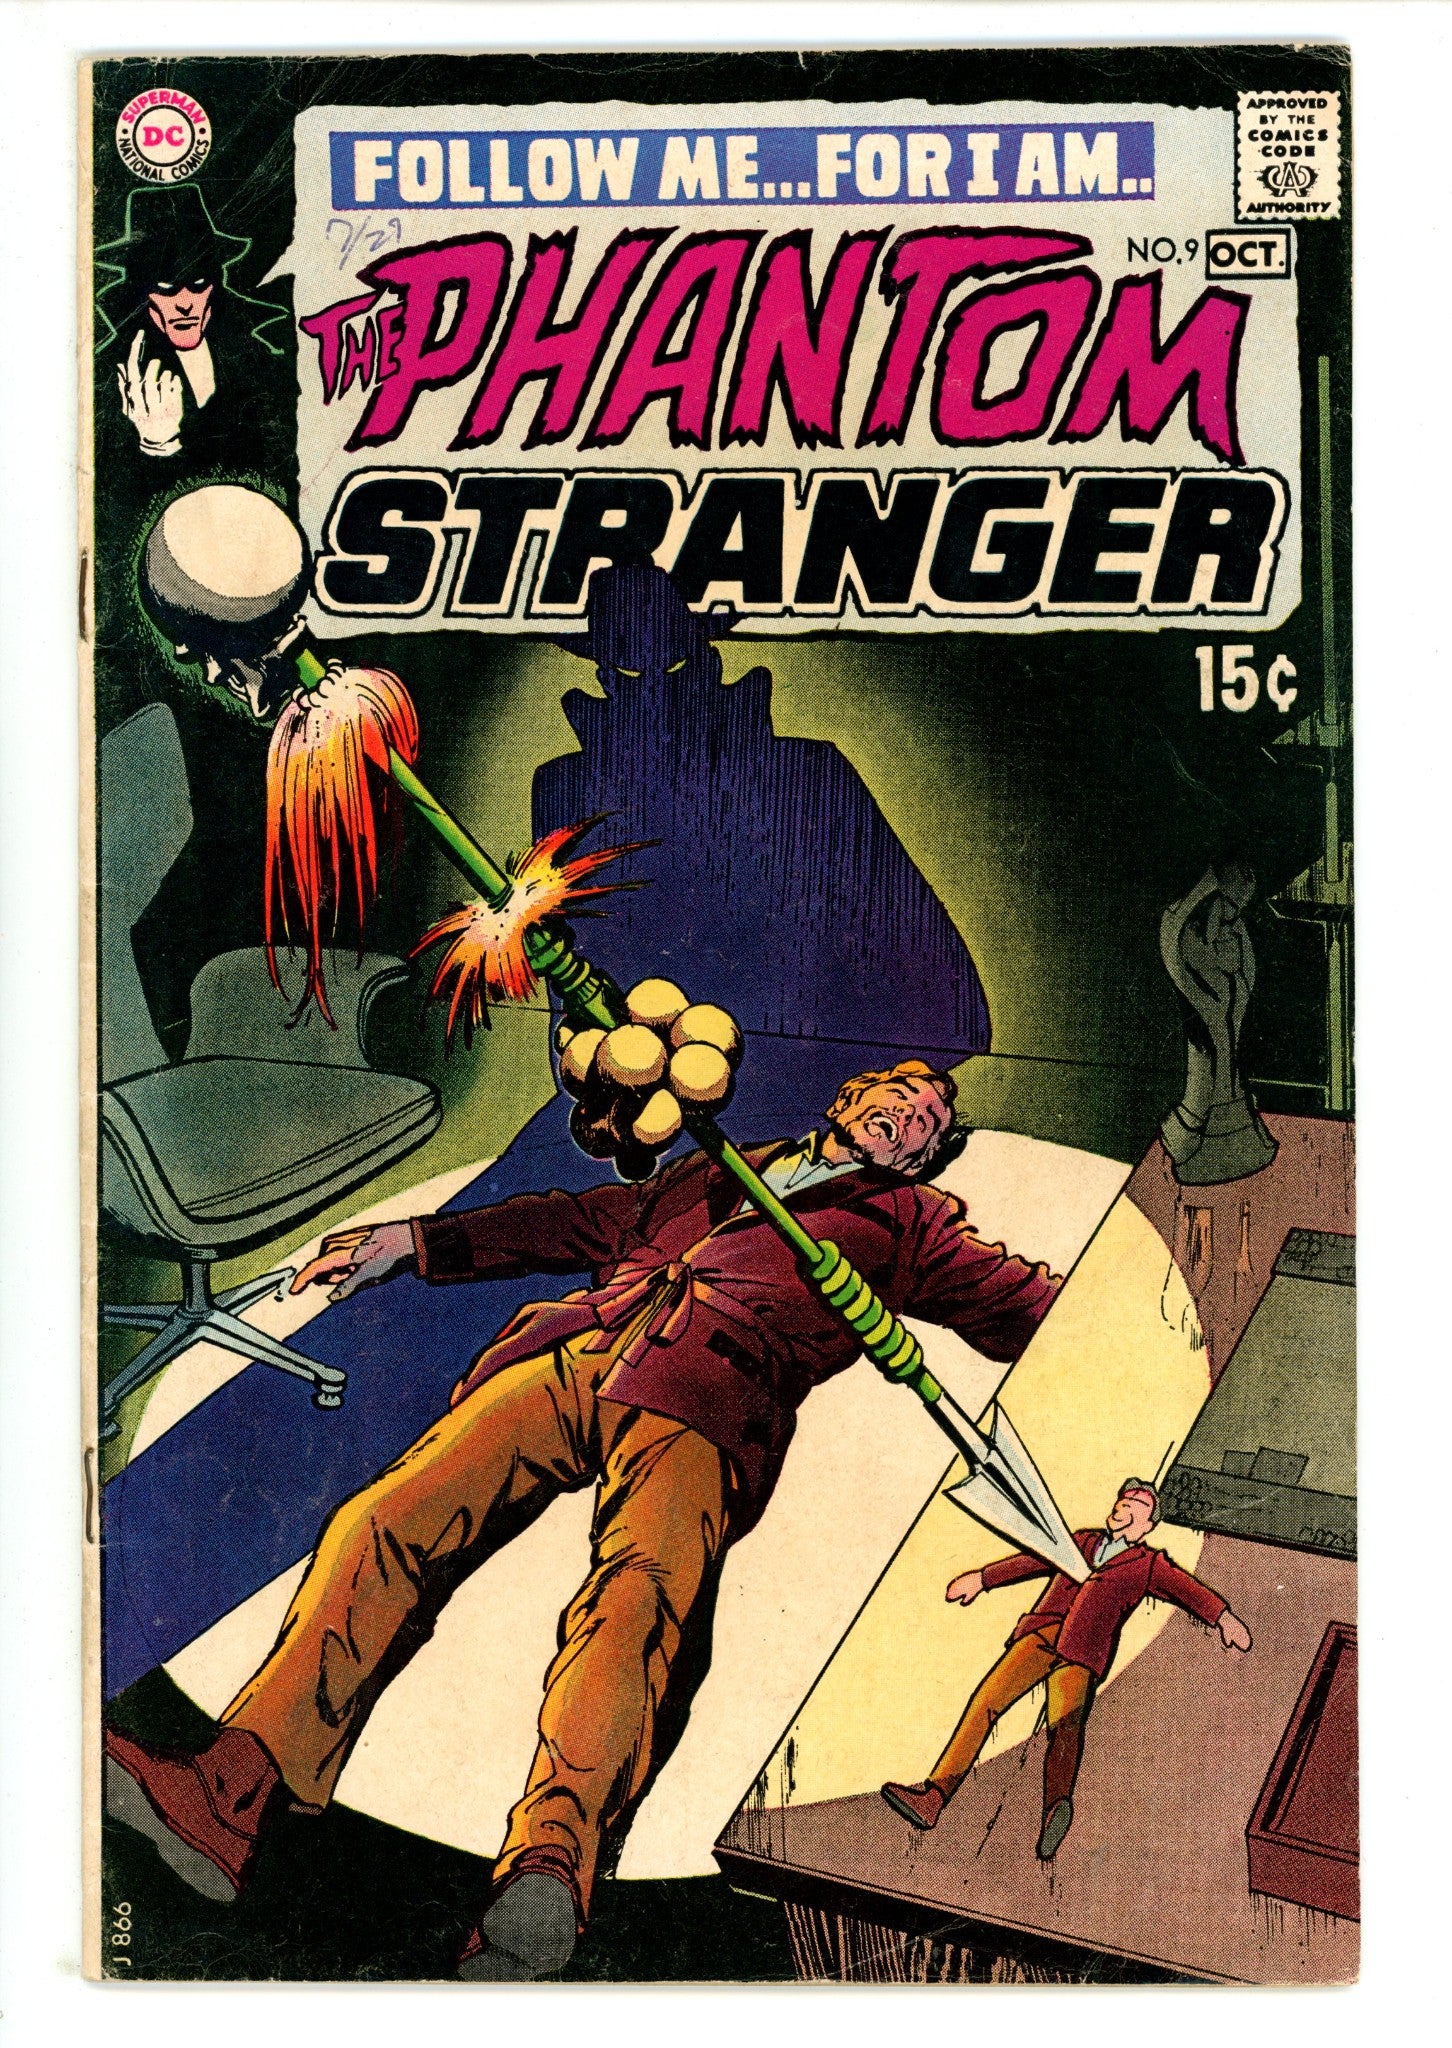 The Phantom Stranger Vol 2 9 VG+ (4.5) (1970) 